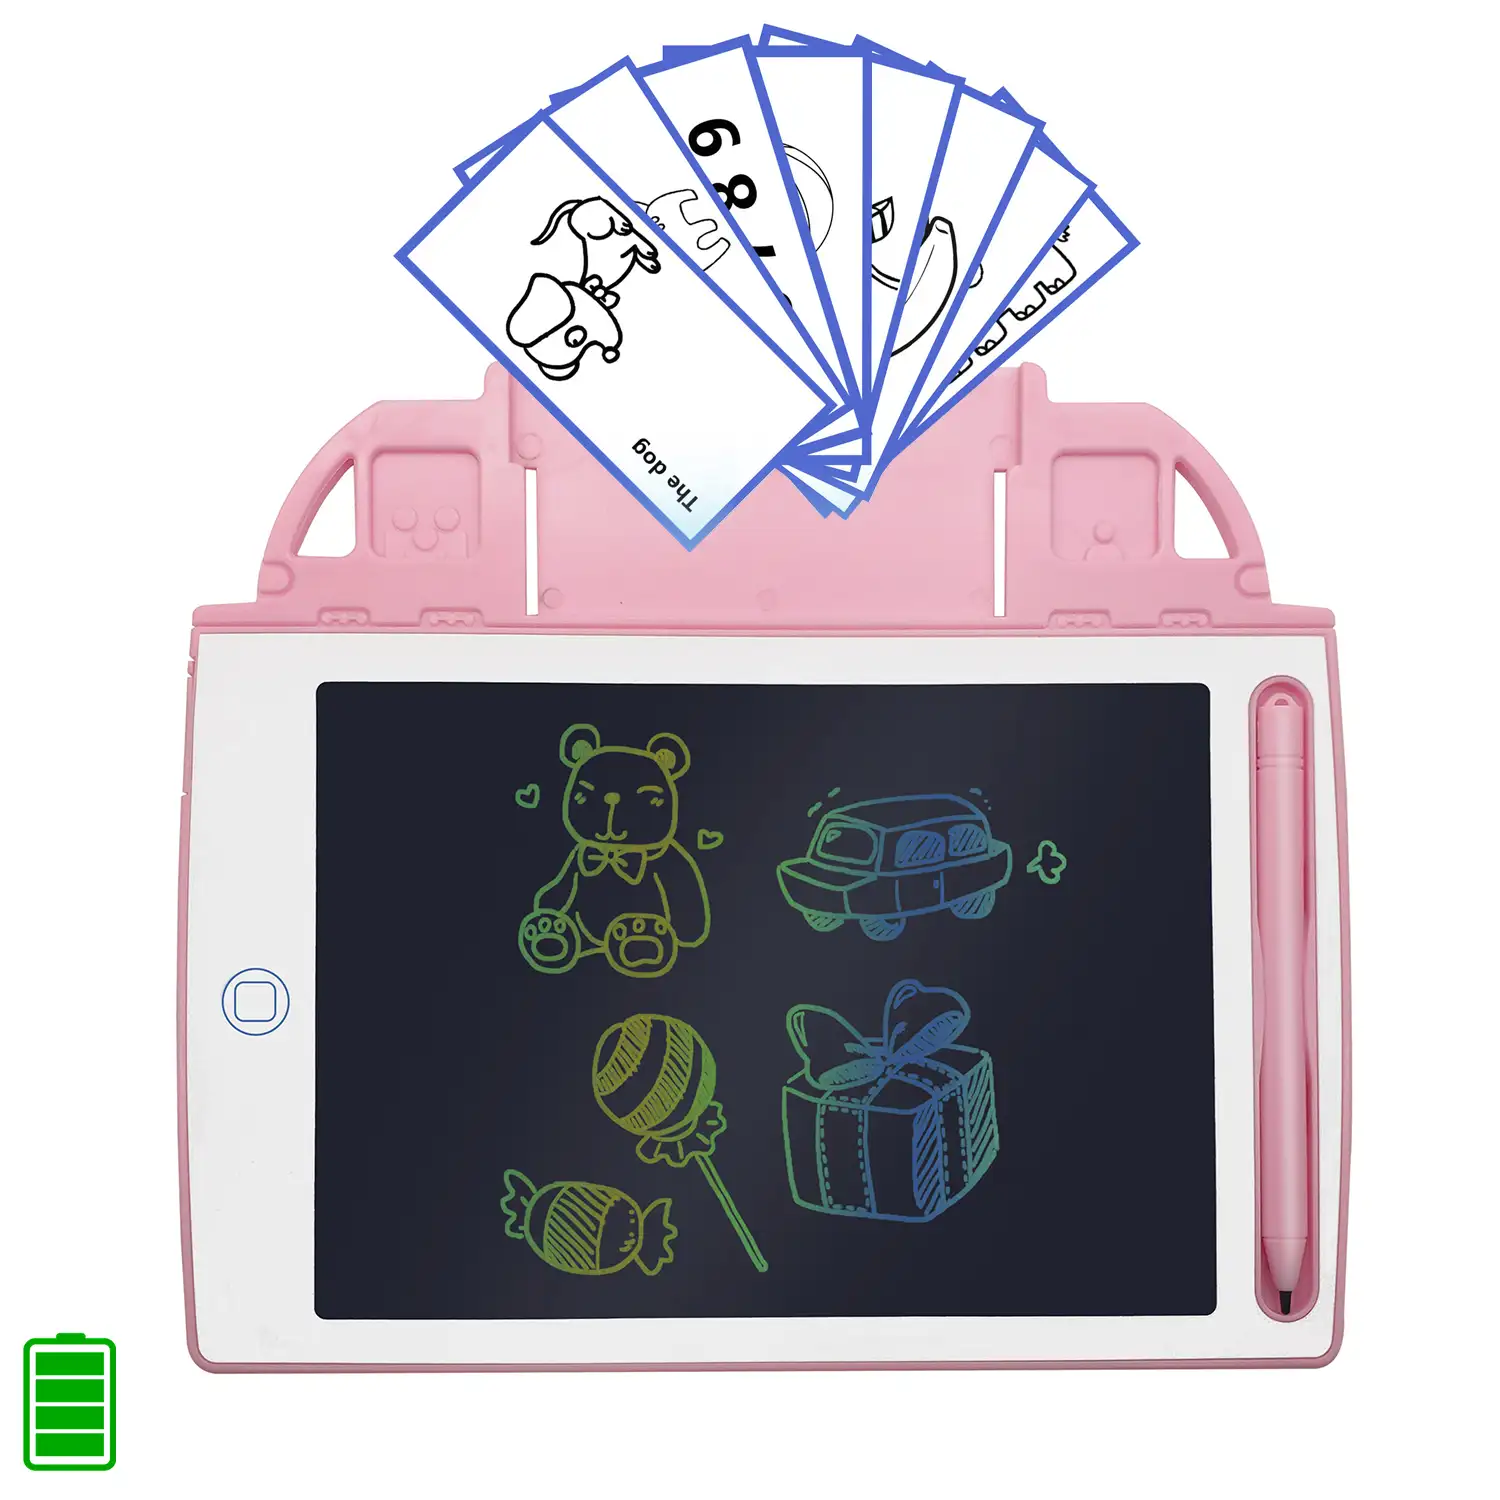 Tableta de dibujo y escritura LCD de 8,4 pulgadas, fondo multicolor. Portátil, con bloqueo de borrado y batería recargable. Incluye tarjetas de aprendizaje para escribir y dibujar.